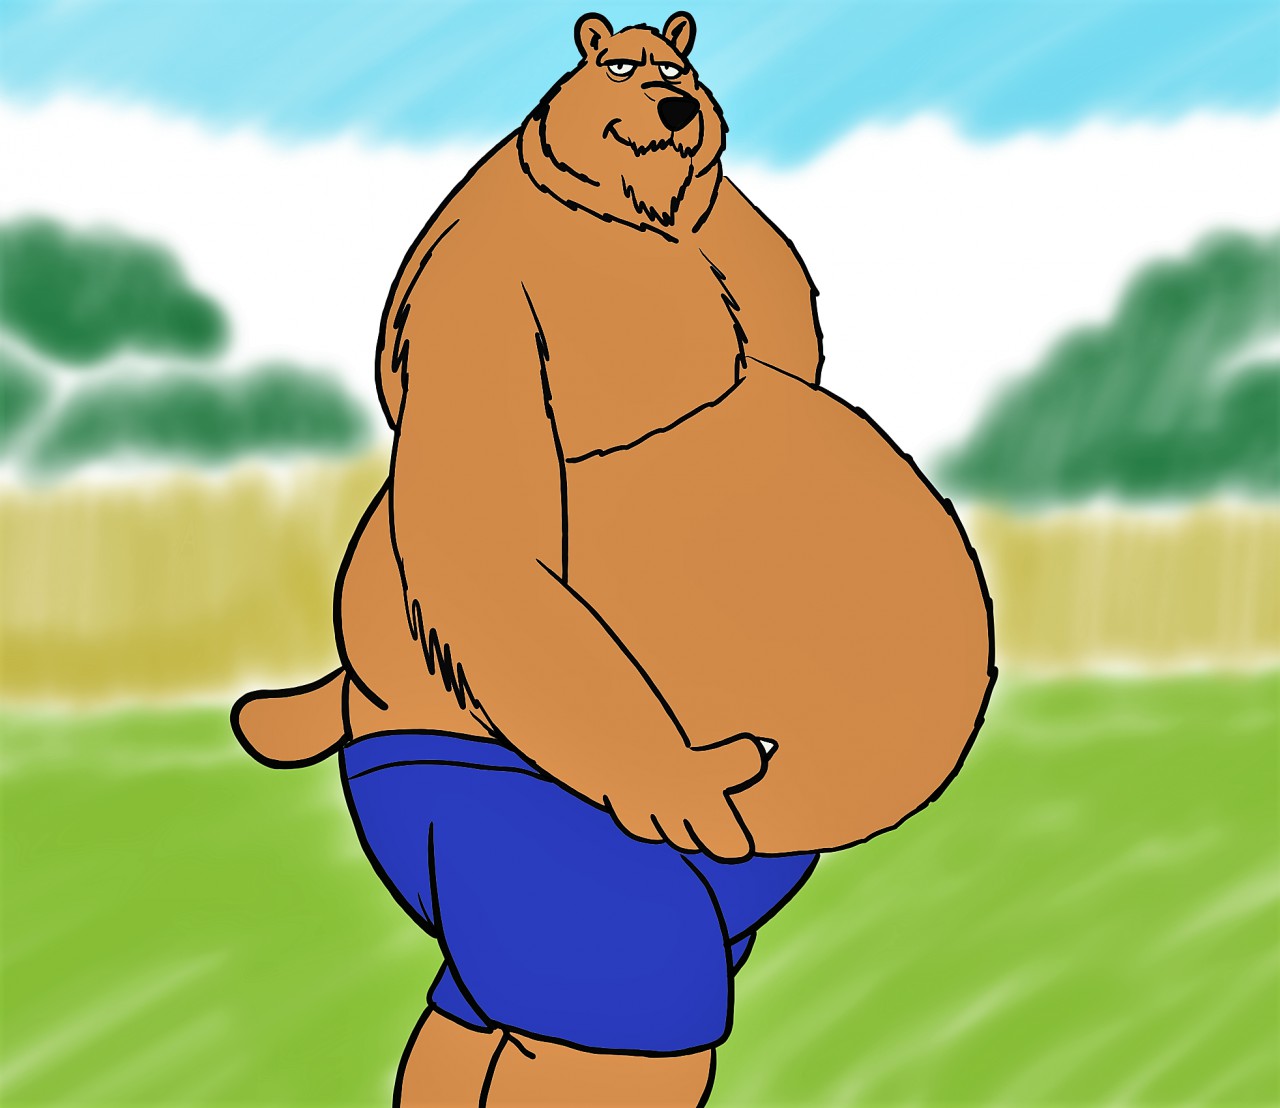 Big bear belly